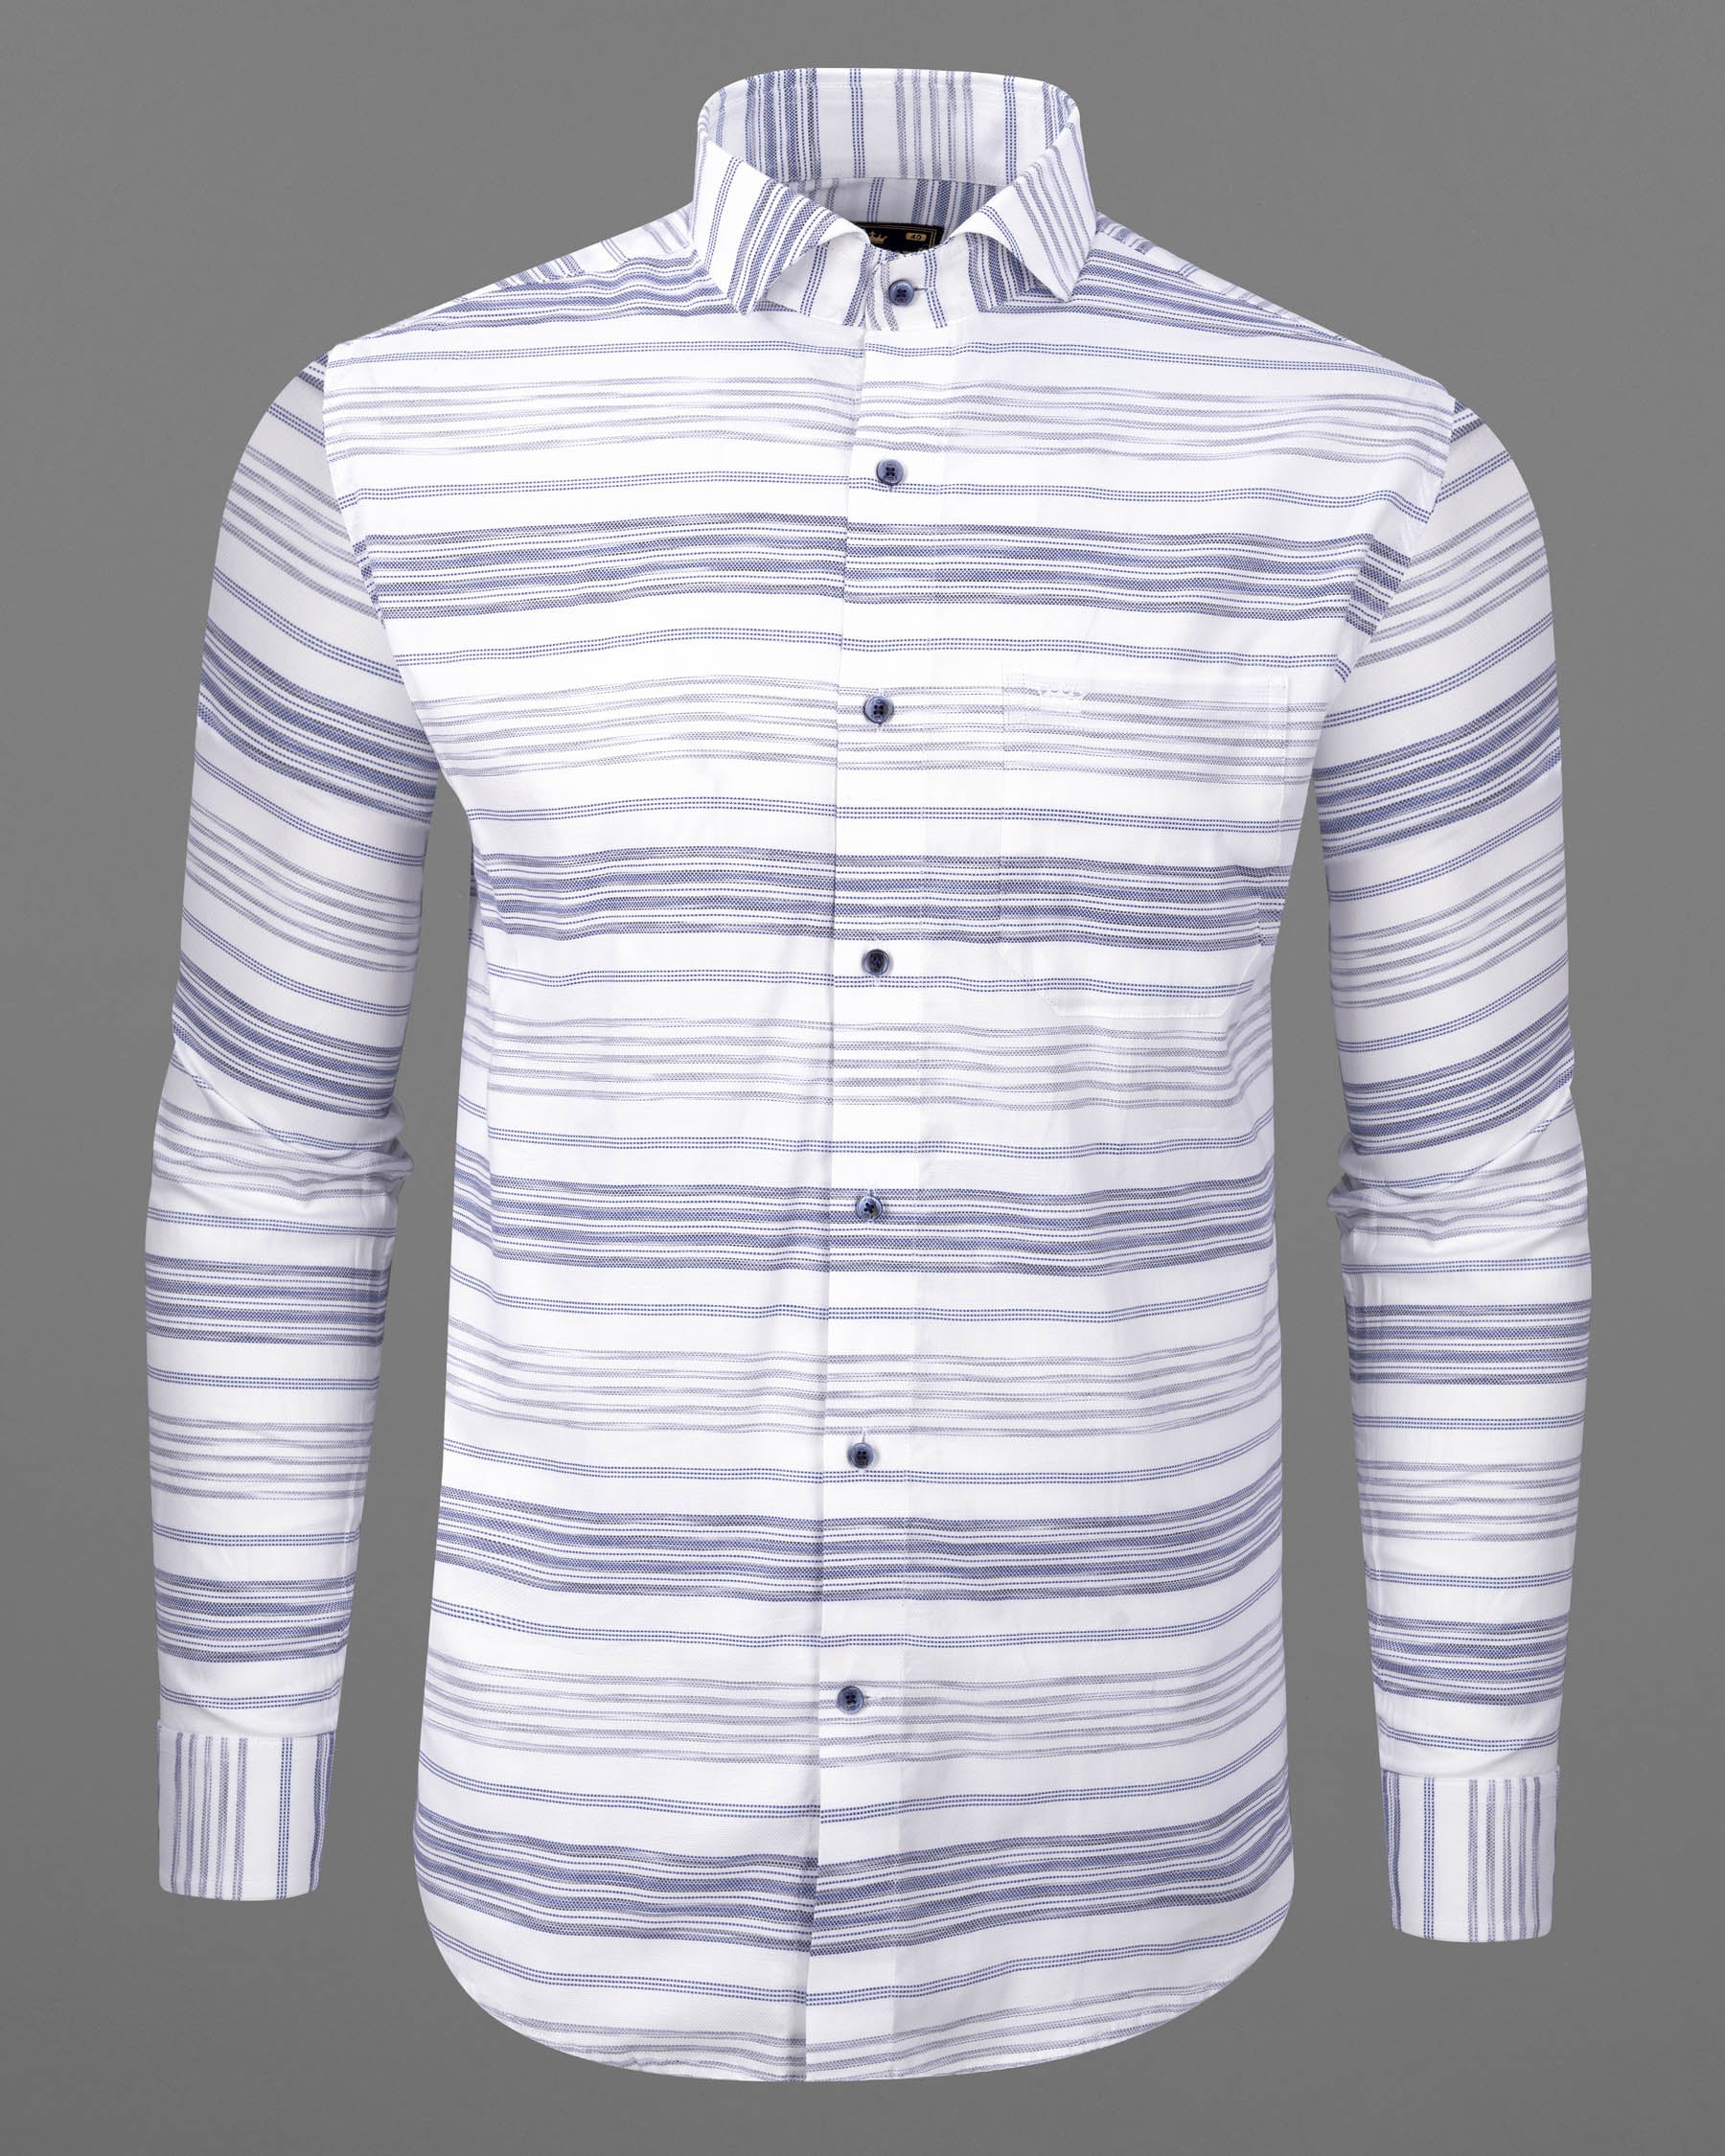 Bright White Striped Dobby Premium Giza Cotton Shirt 6198-CA-BLE-38, 6198-CA-BLE-H-38, 6198-CA-BLE-39, 6198-CA-BLE-H-39, 6198-CA-BLE-40, 6198-CA-BLE-H-40, 6198-CA-BLE-42, 6198-CA-BLE-H-42, 6198-CA-BLE-44, 6198-CA-BLE-H-44, 6198-CA-BLE-46, 6198-CA-BLE-H-46, 6198-CA-BLE-48, 6198-CA-BLE-H-48, 6198-CA-BLE-50, 6198-CA-BLE-H-50, 6198-CA-BLE-52, 6198-CA-BLE-H-52